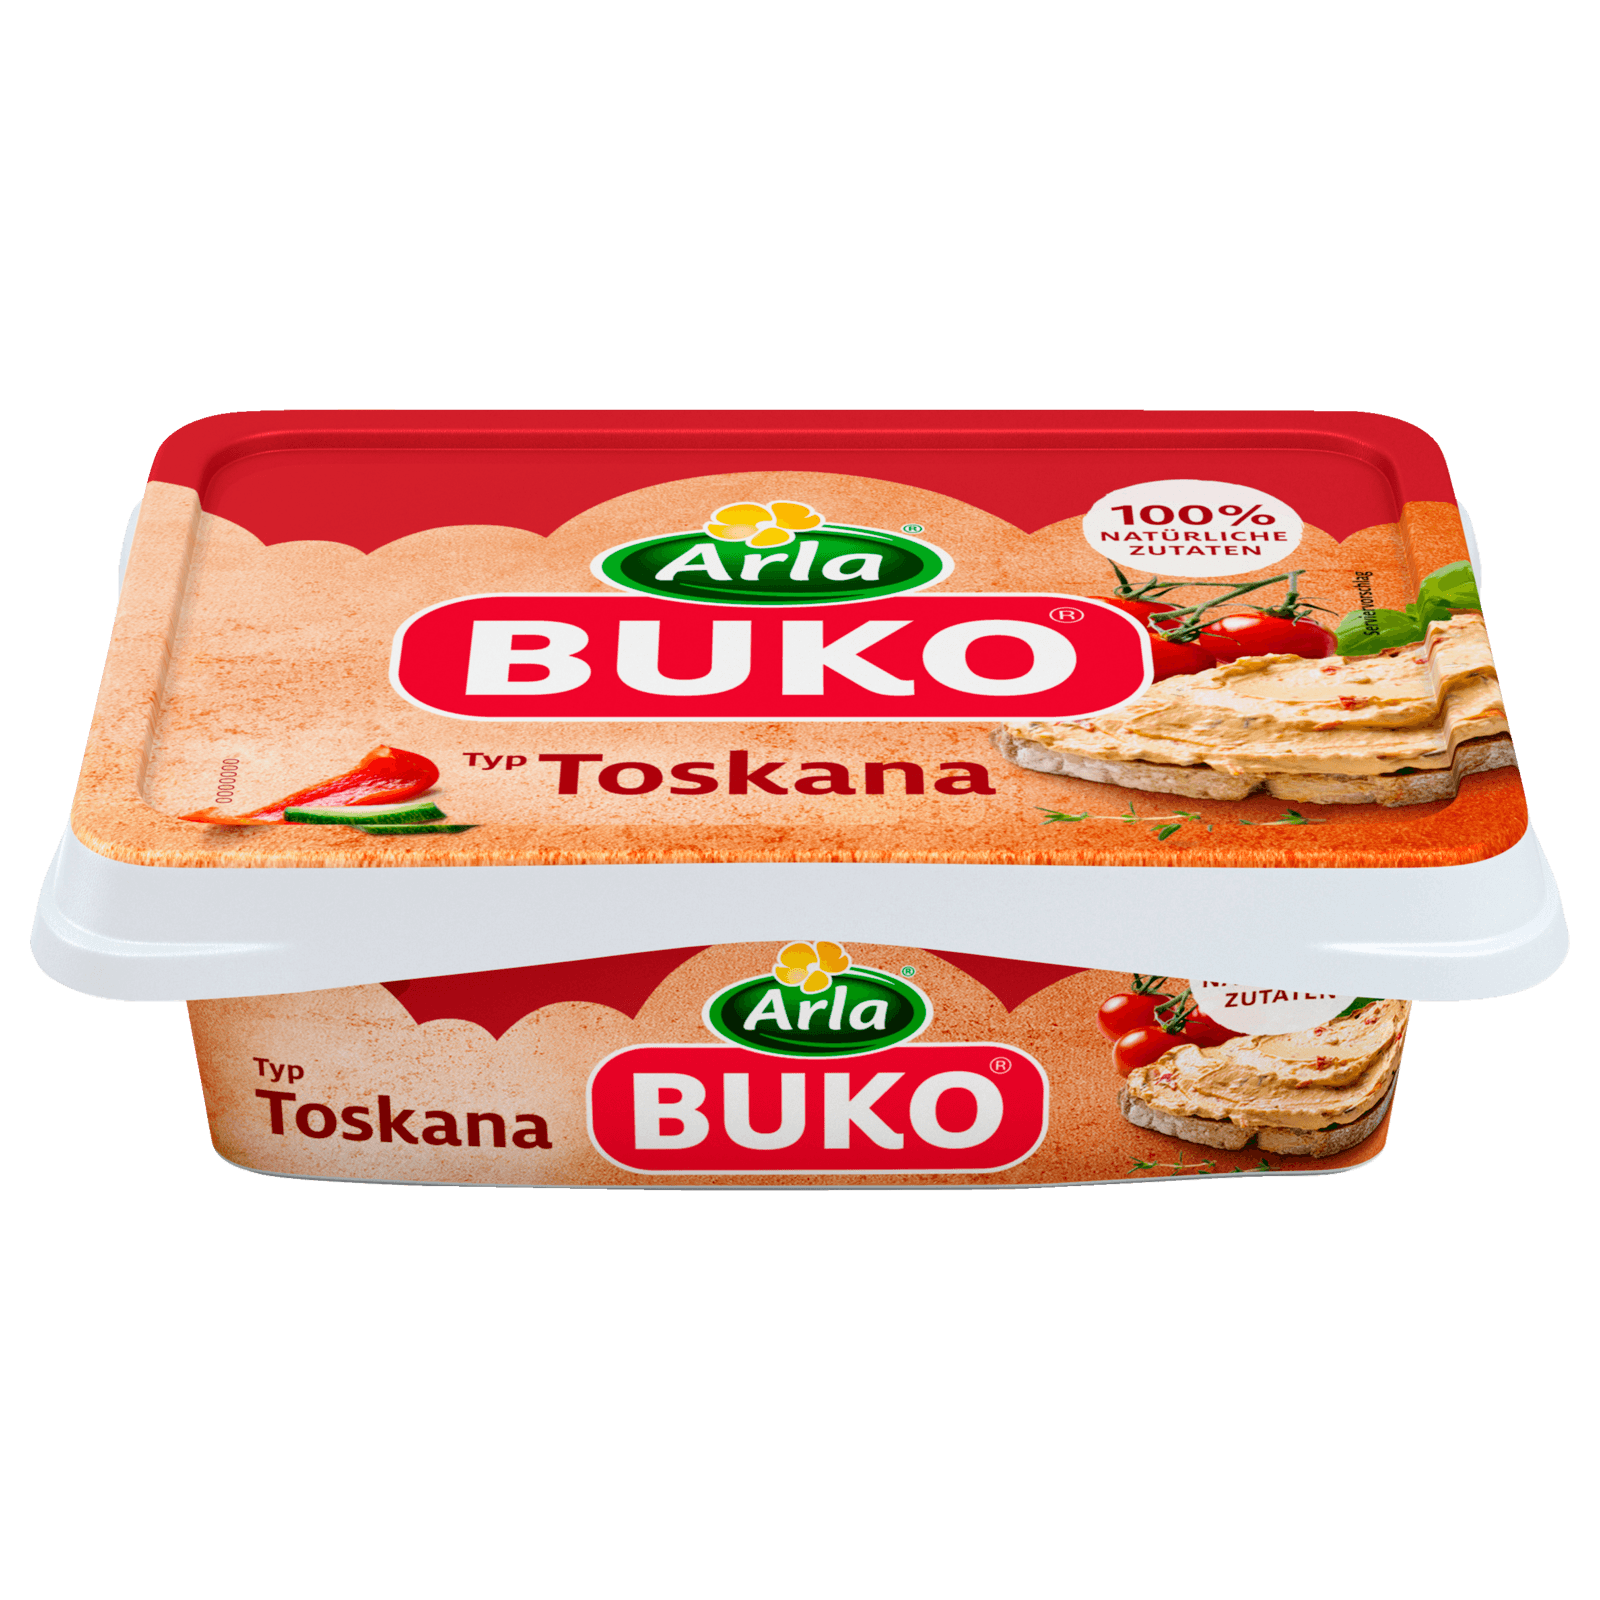 Arla Buko Frischkäse Toskana 200g bei REWE online bestellen!